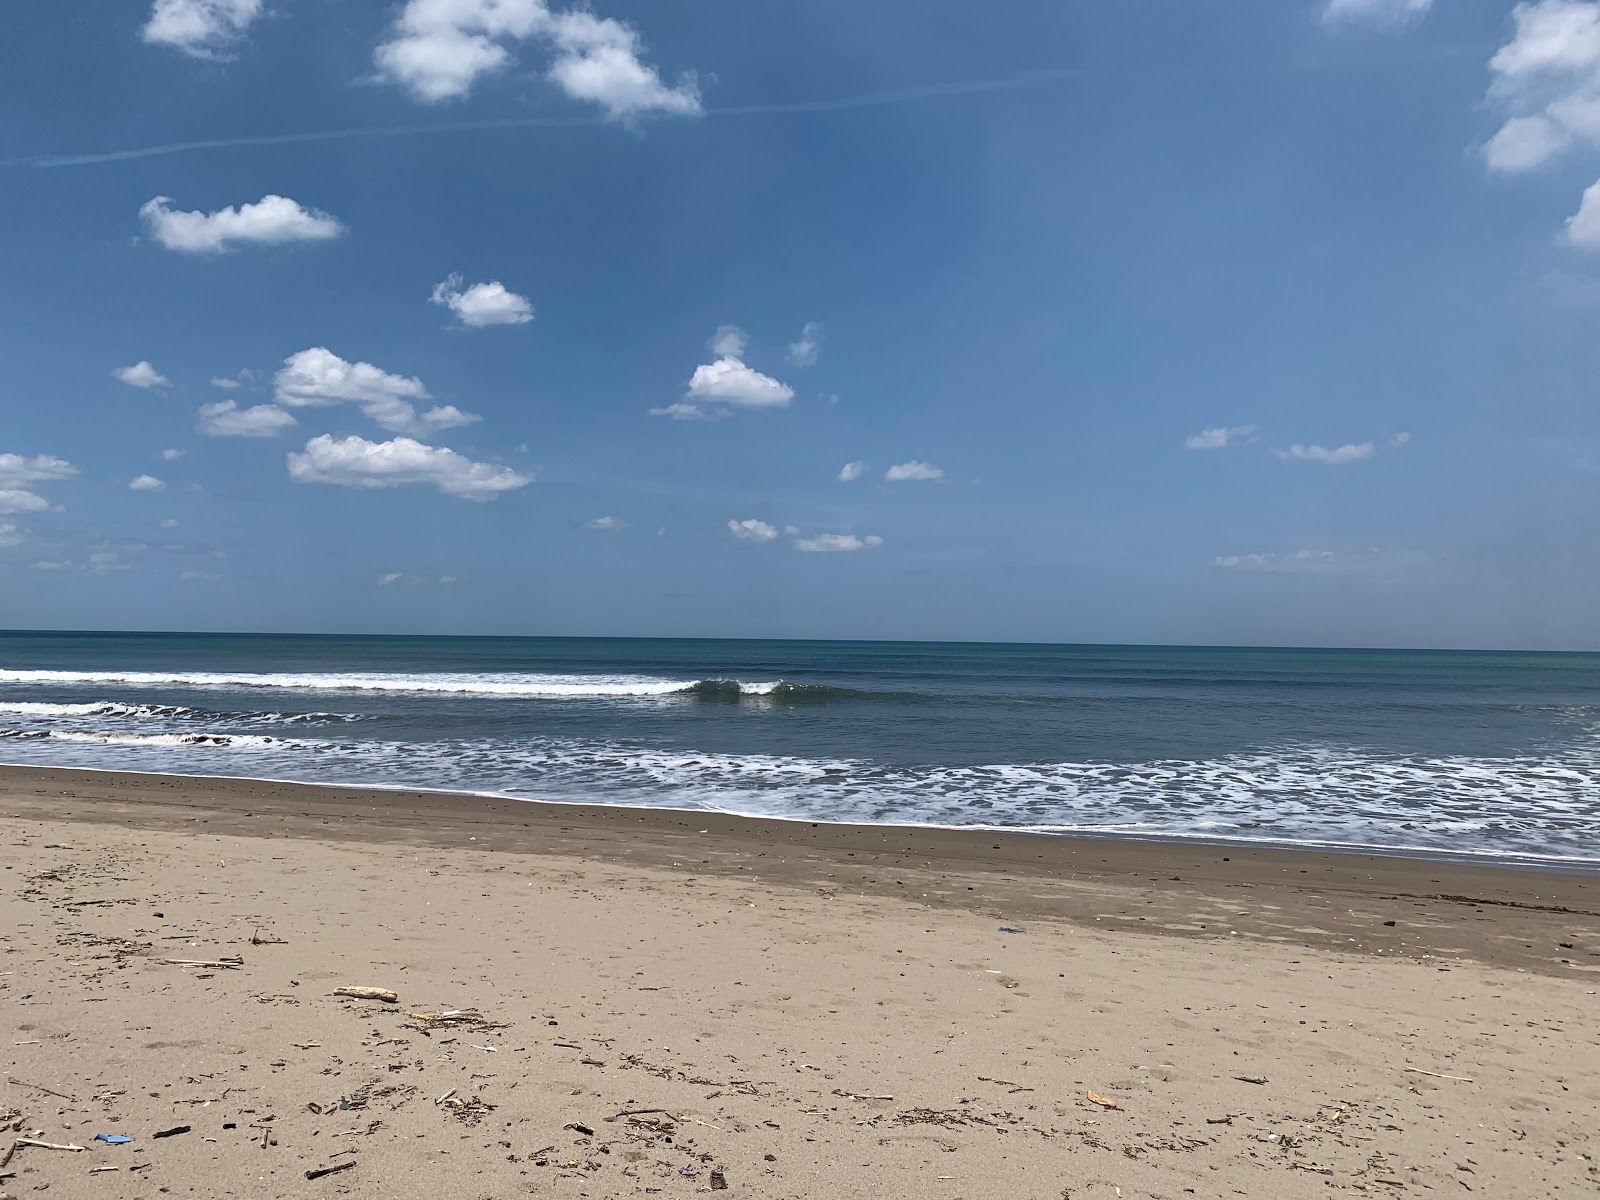 Zdjęcie Quizala beach - popularne miejsce wśród znawców relaksu